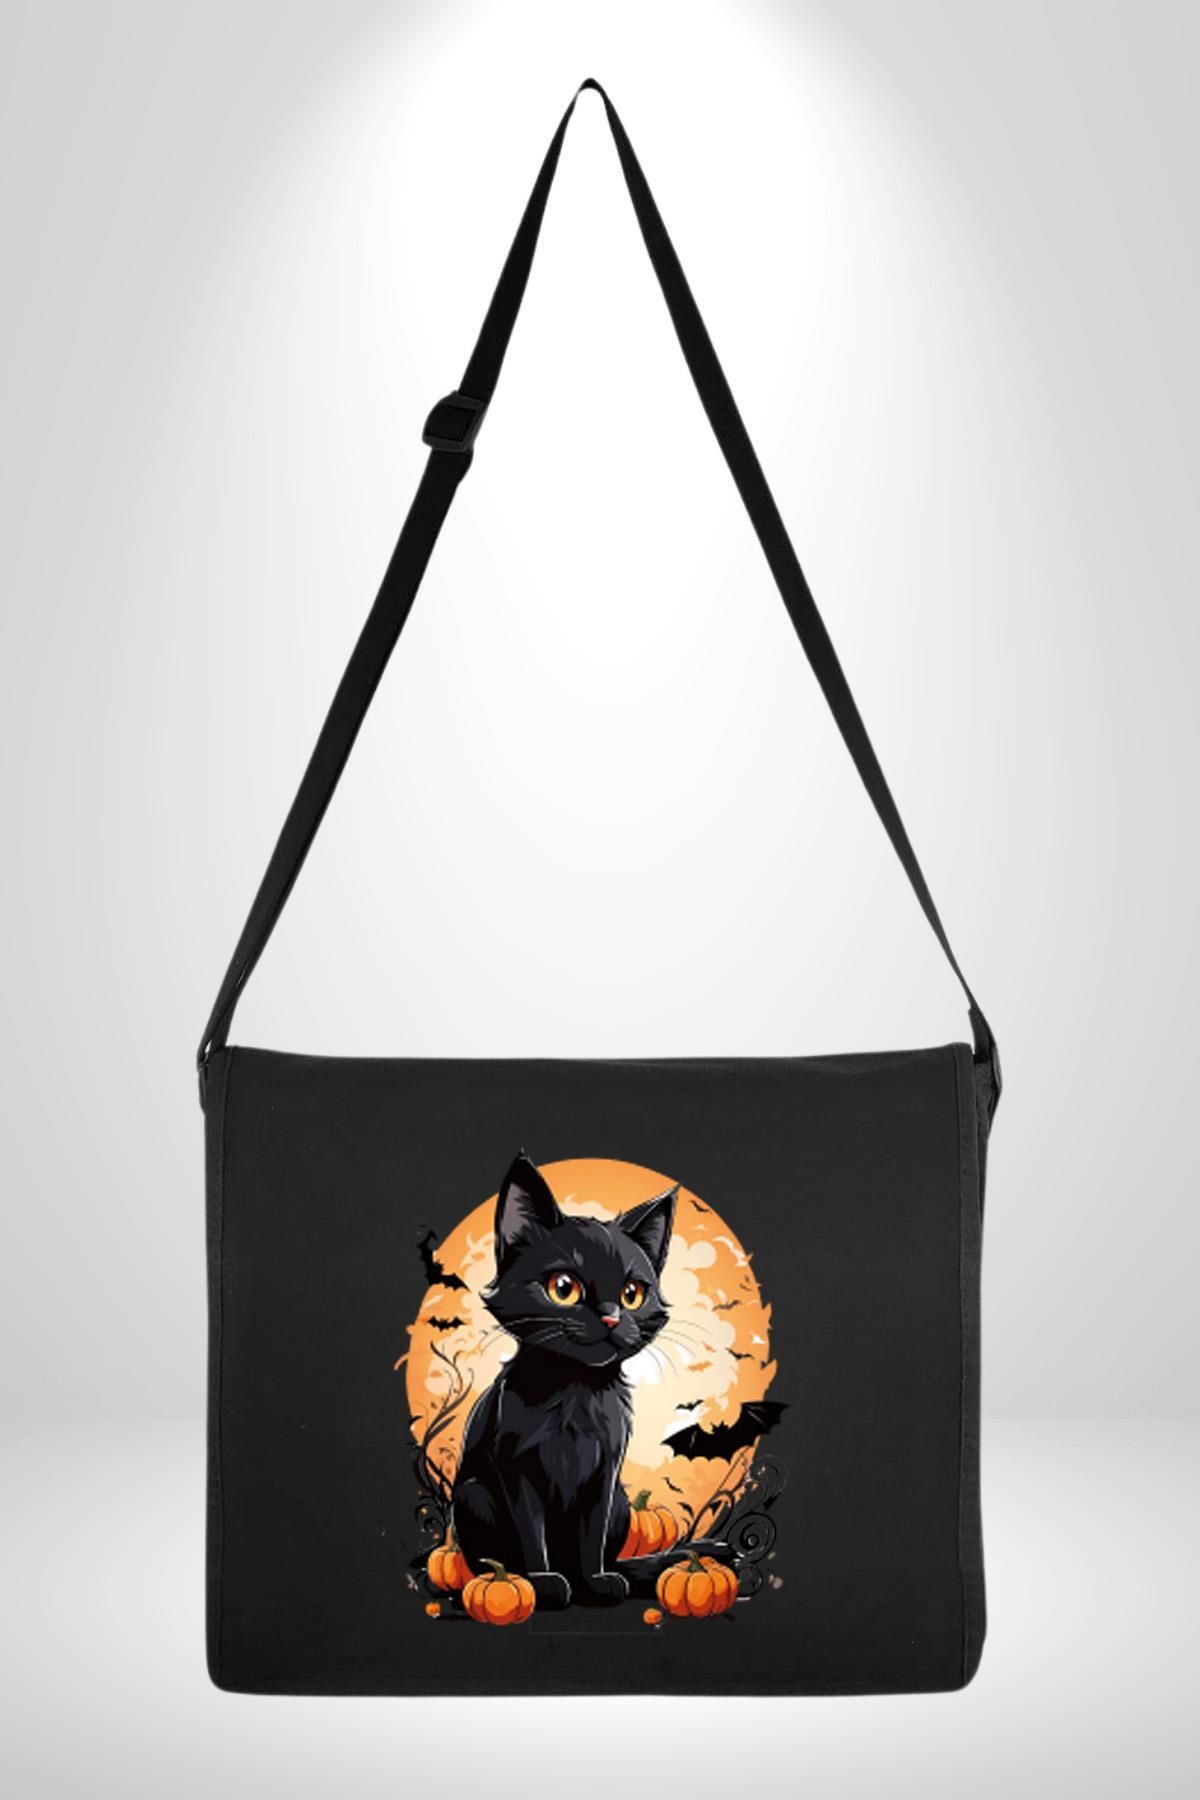 Angemiel Cadılar Bayramı Kedi Kadın Erkek Çocuk Siyah Kanvas Postacı Çanta